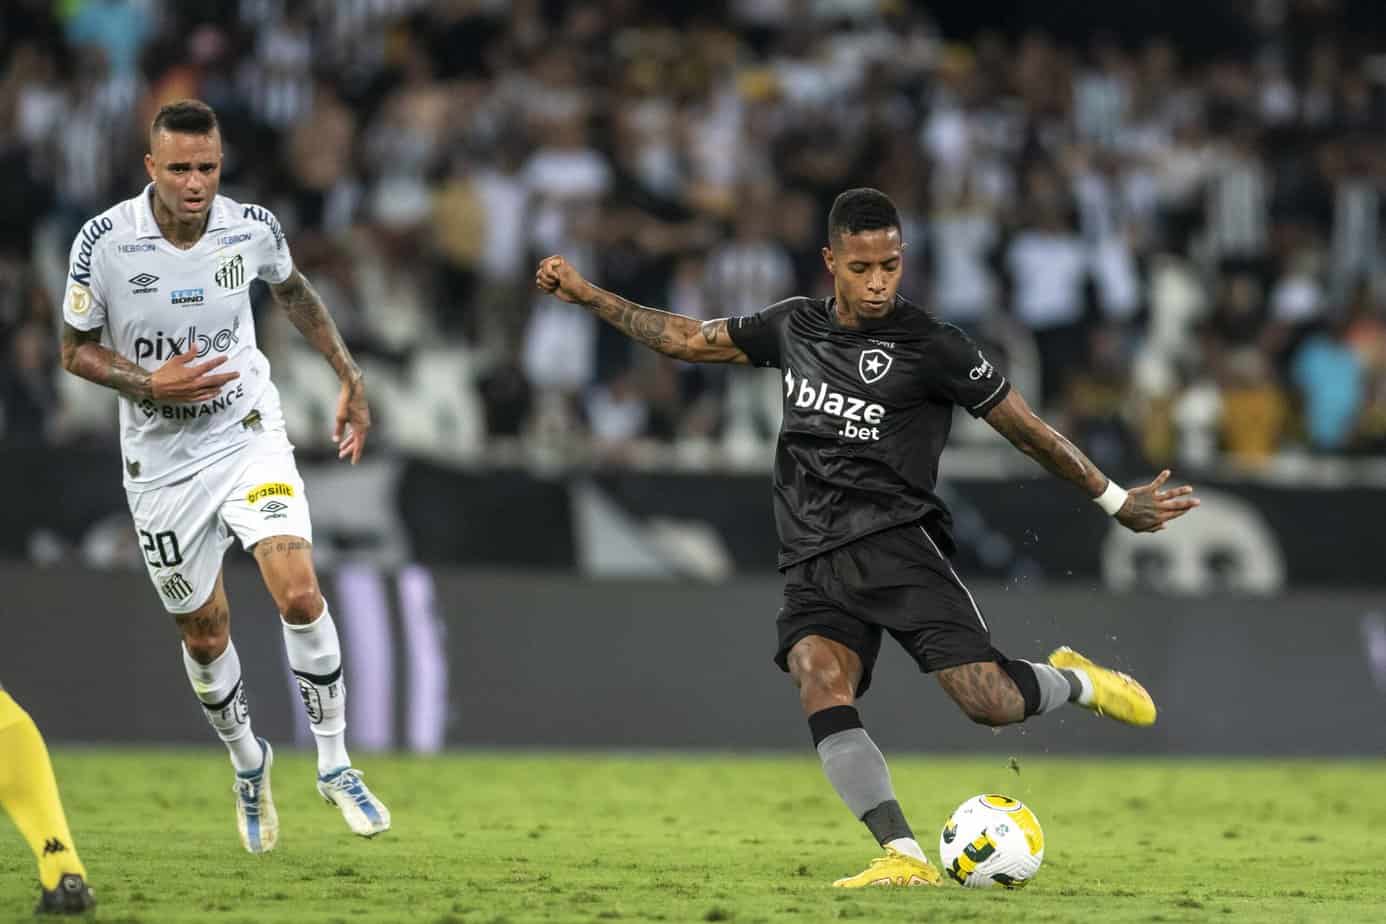 Pré-visualização e probabilidades de aposta de Botafogo x Santos